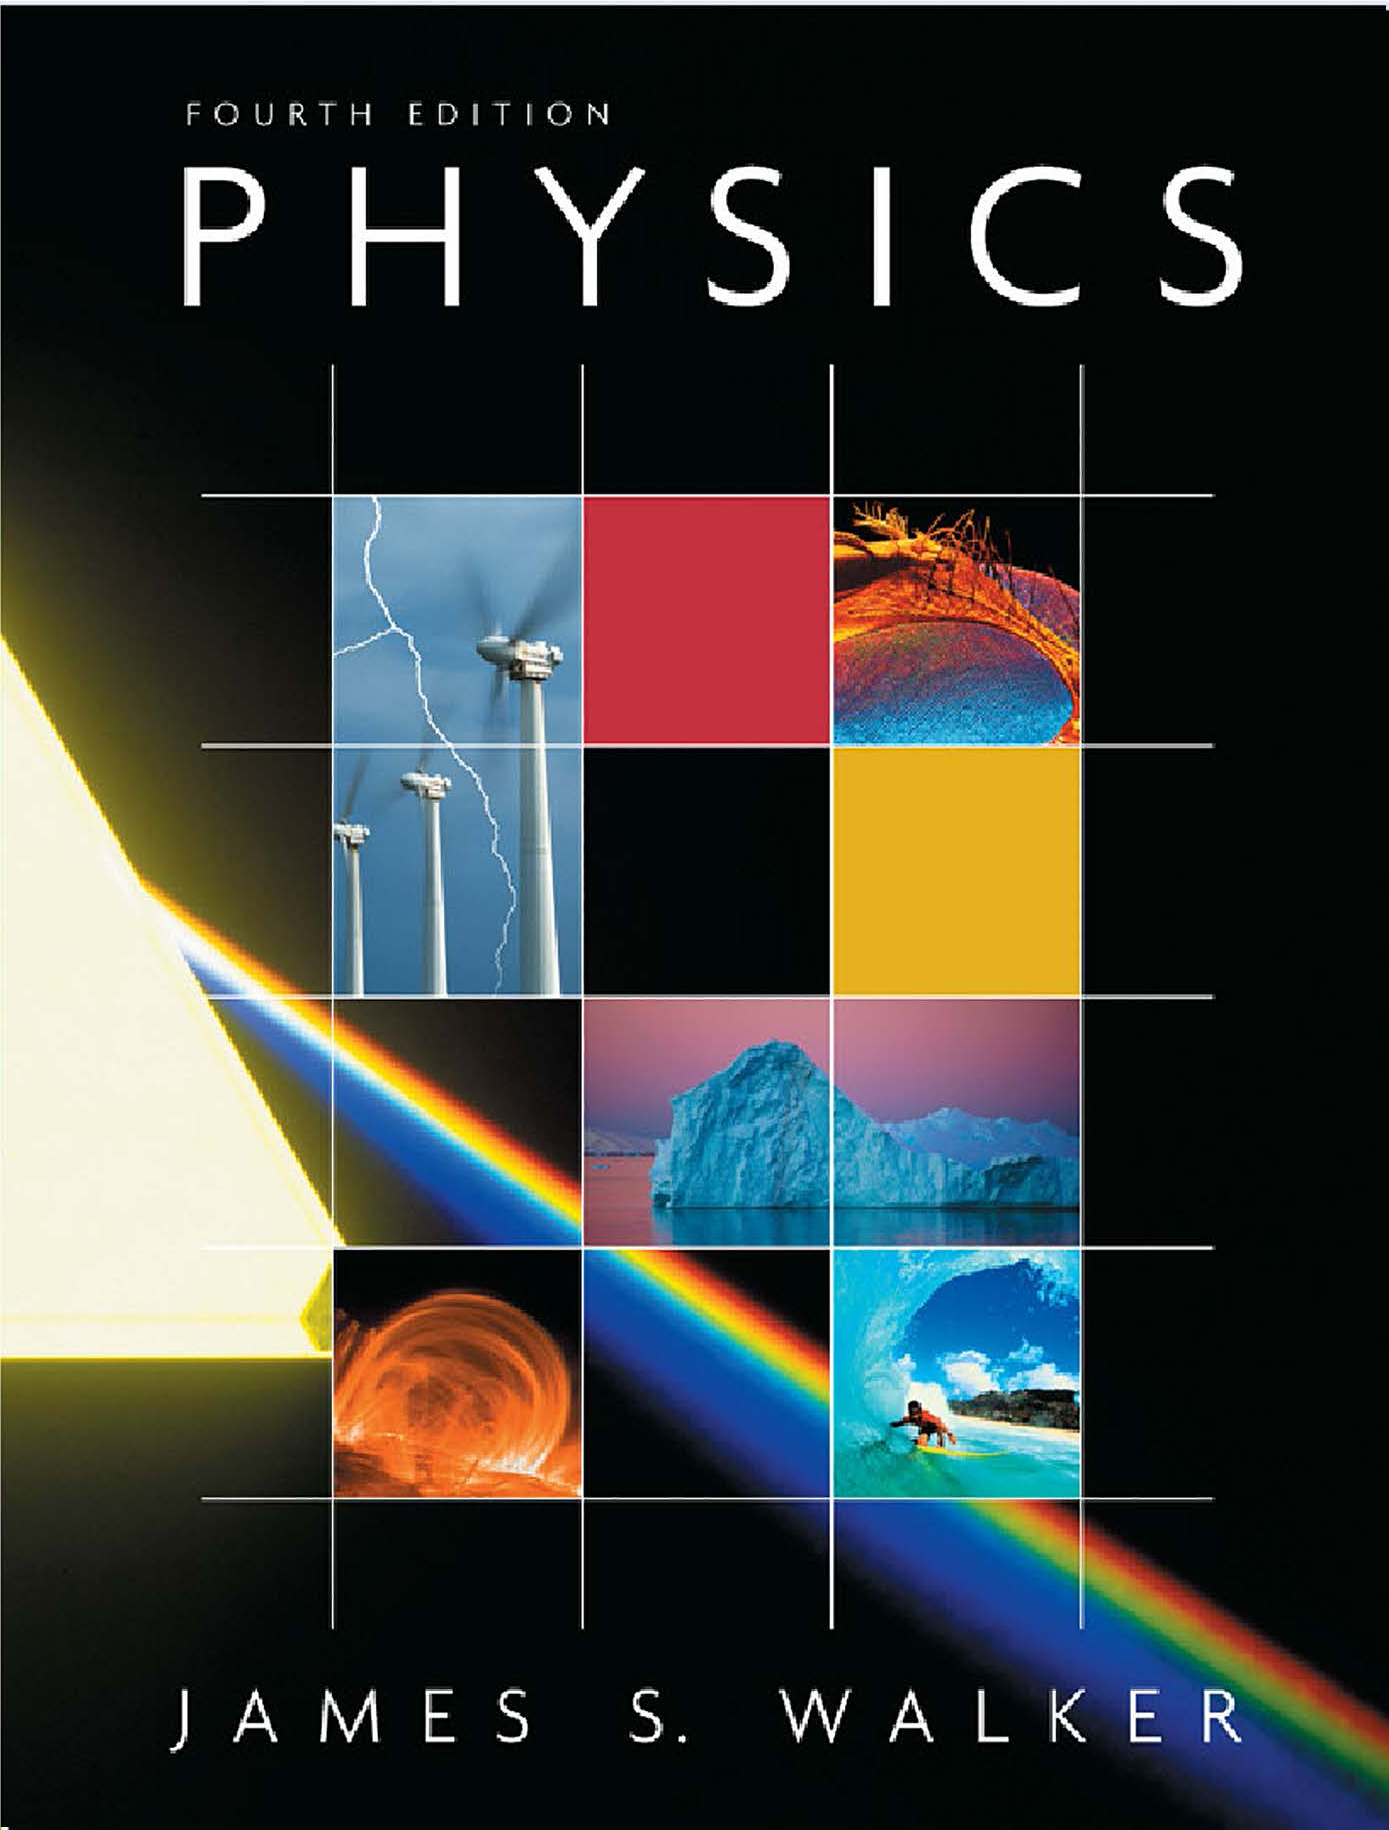 历年国际IB Physics课程教材课本